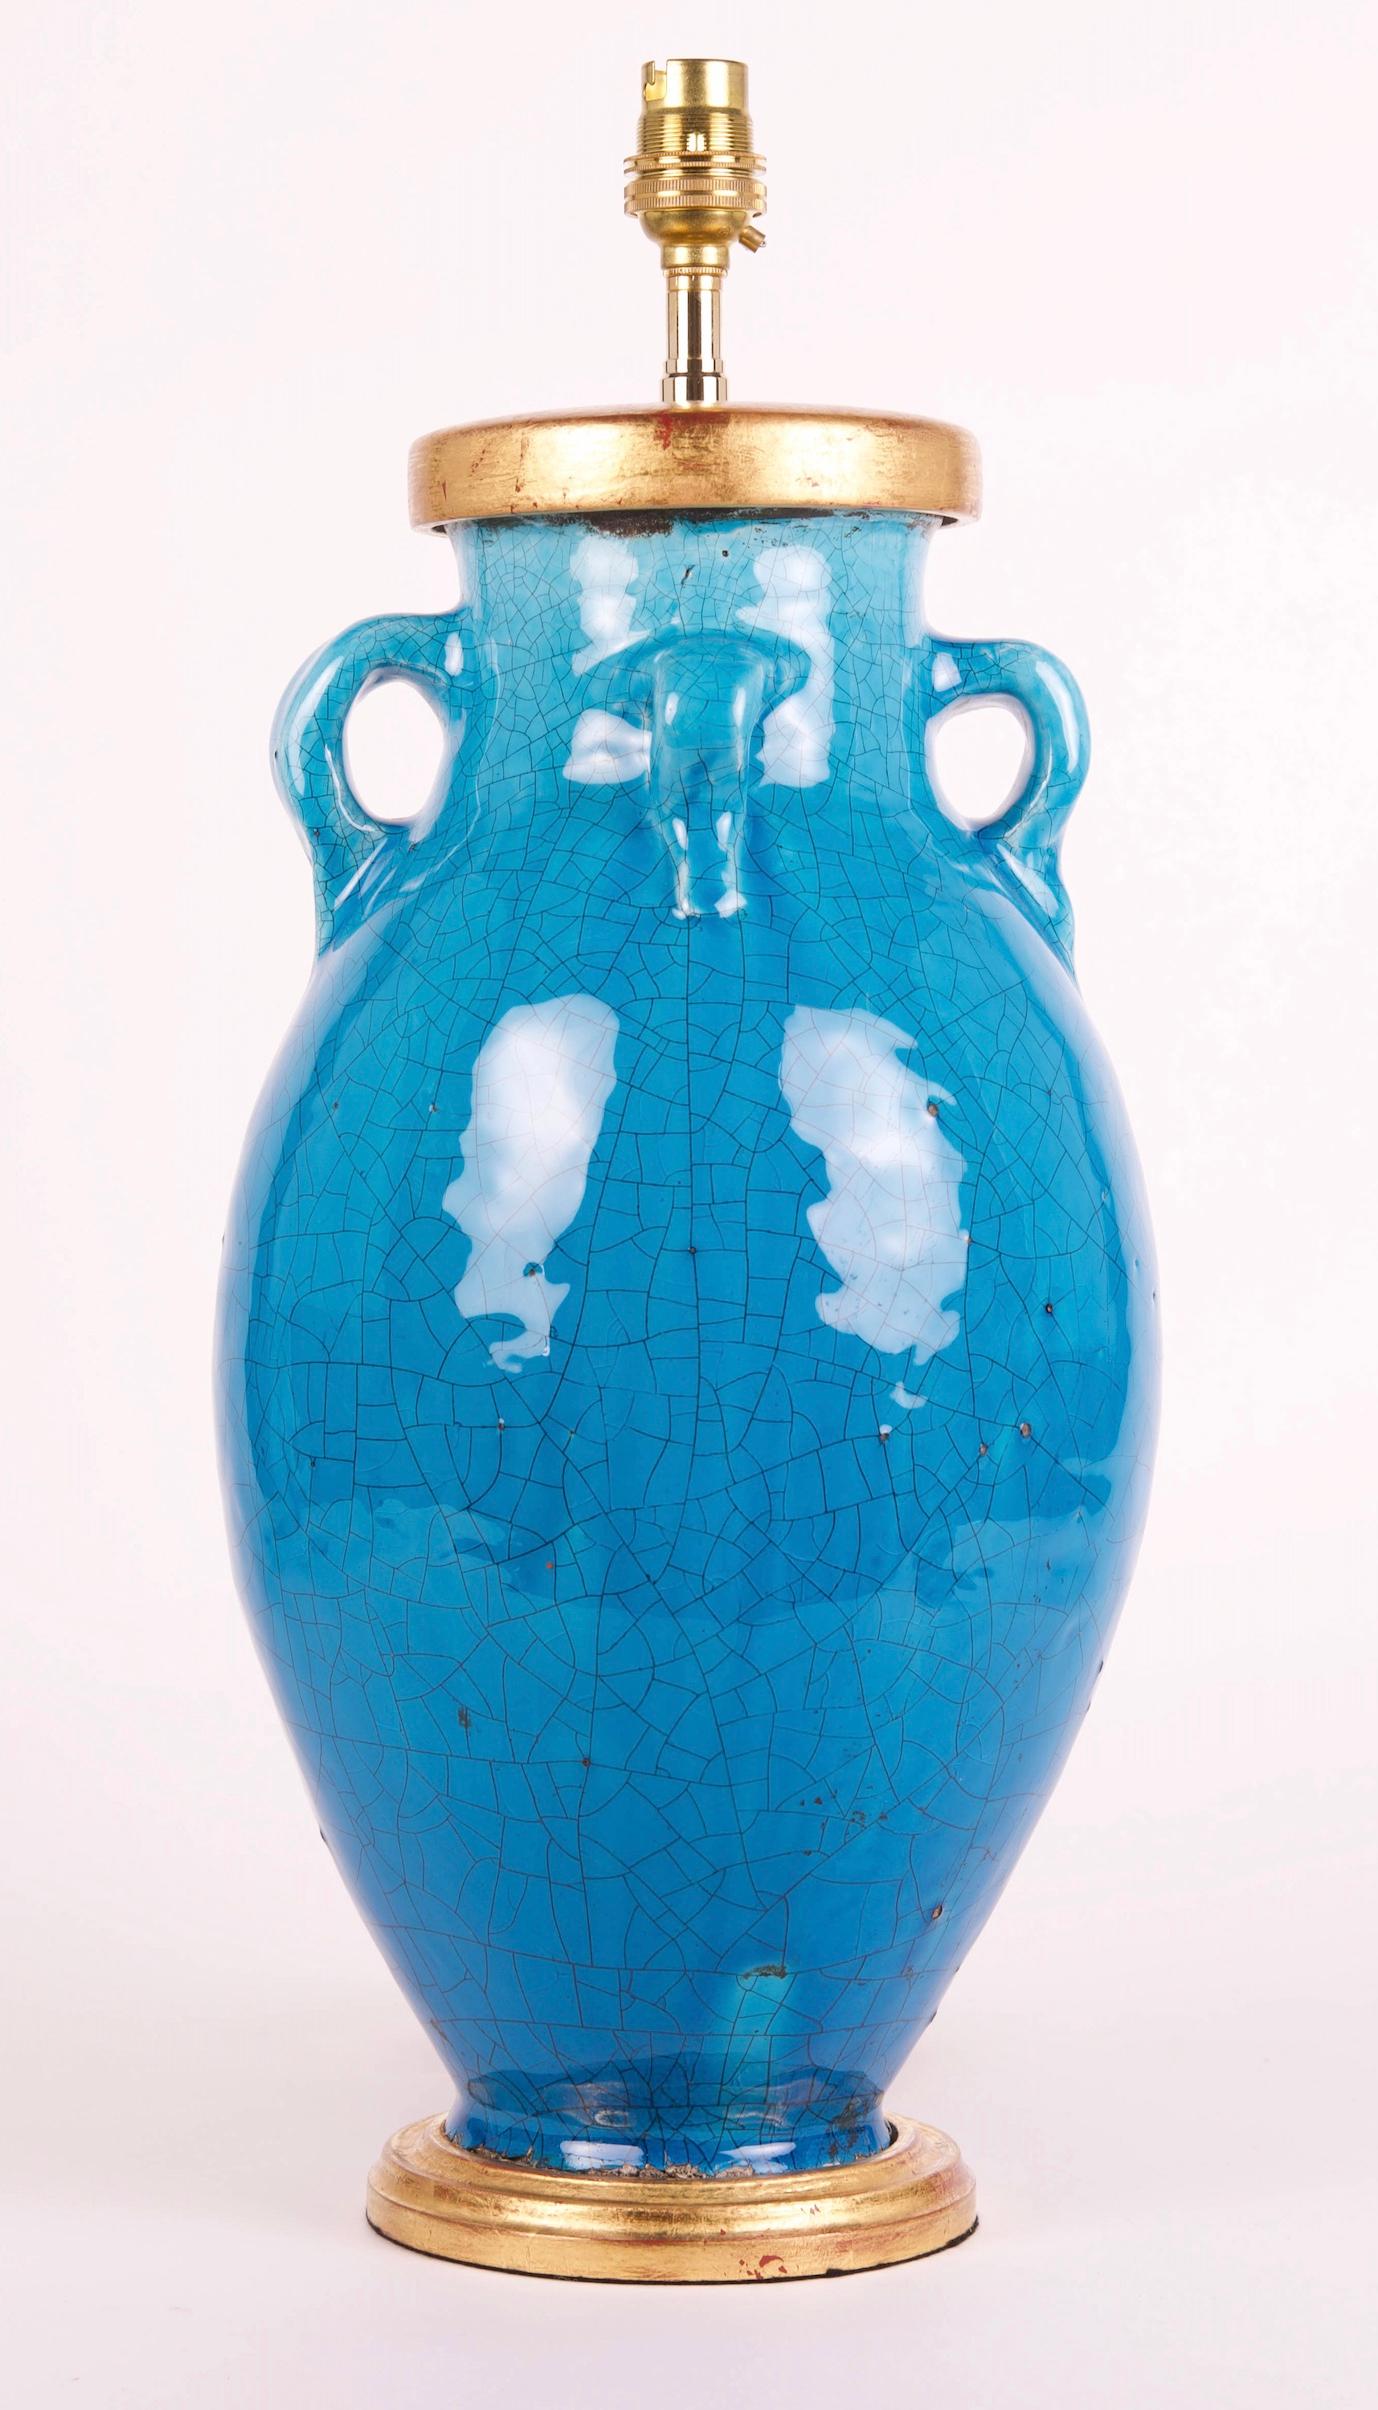 Un superbe vase balustre à quatre anses, avec une glaçure turquoise craquelée exceptionnelle, maintenant monté comme une lampe avec une base tournée et dorée à la main.

Hauteur du vase : 40 cm (15 3/4 in), y compris la base en bois doré, mais sans